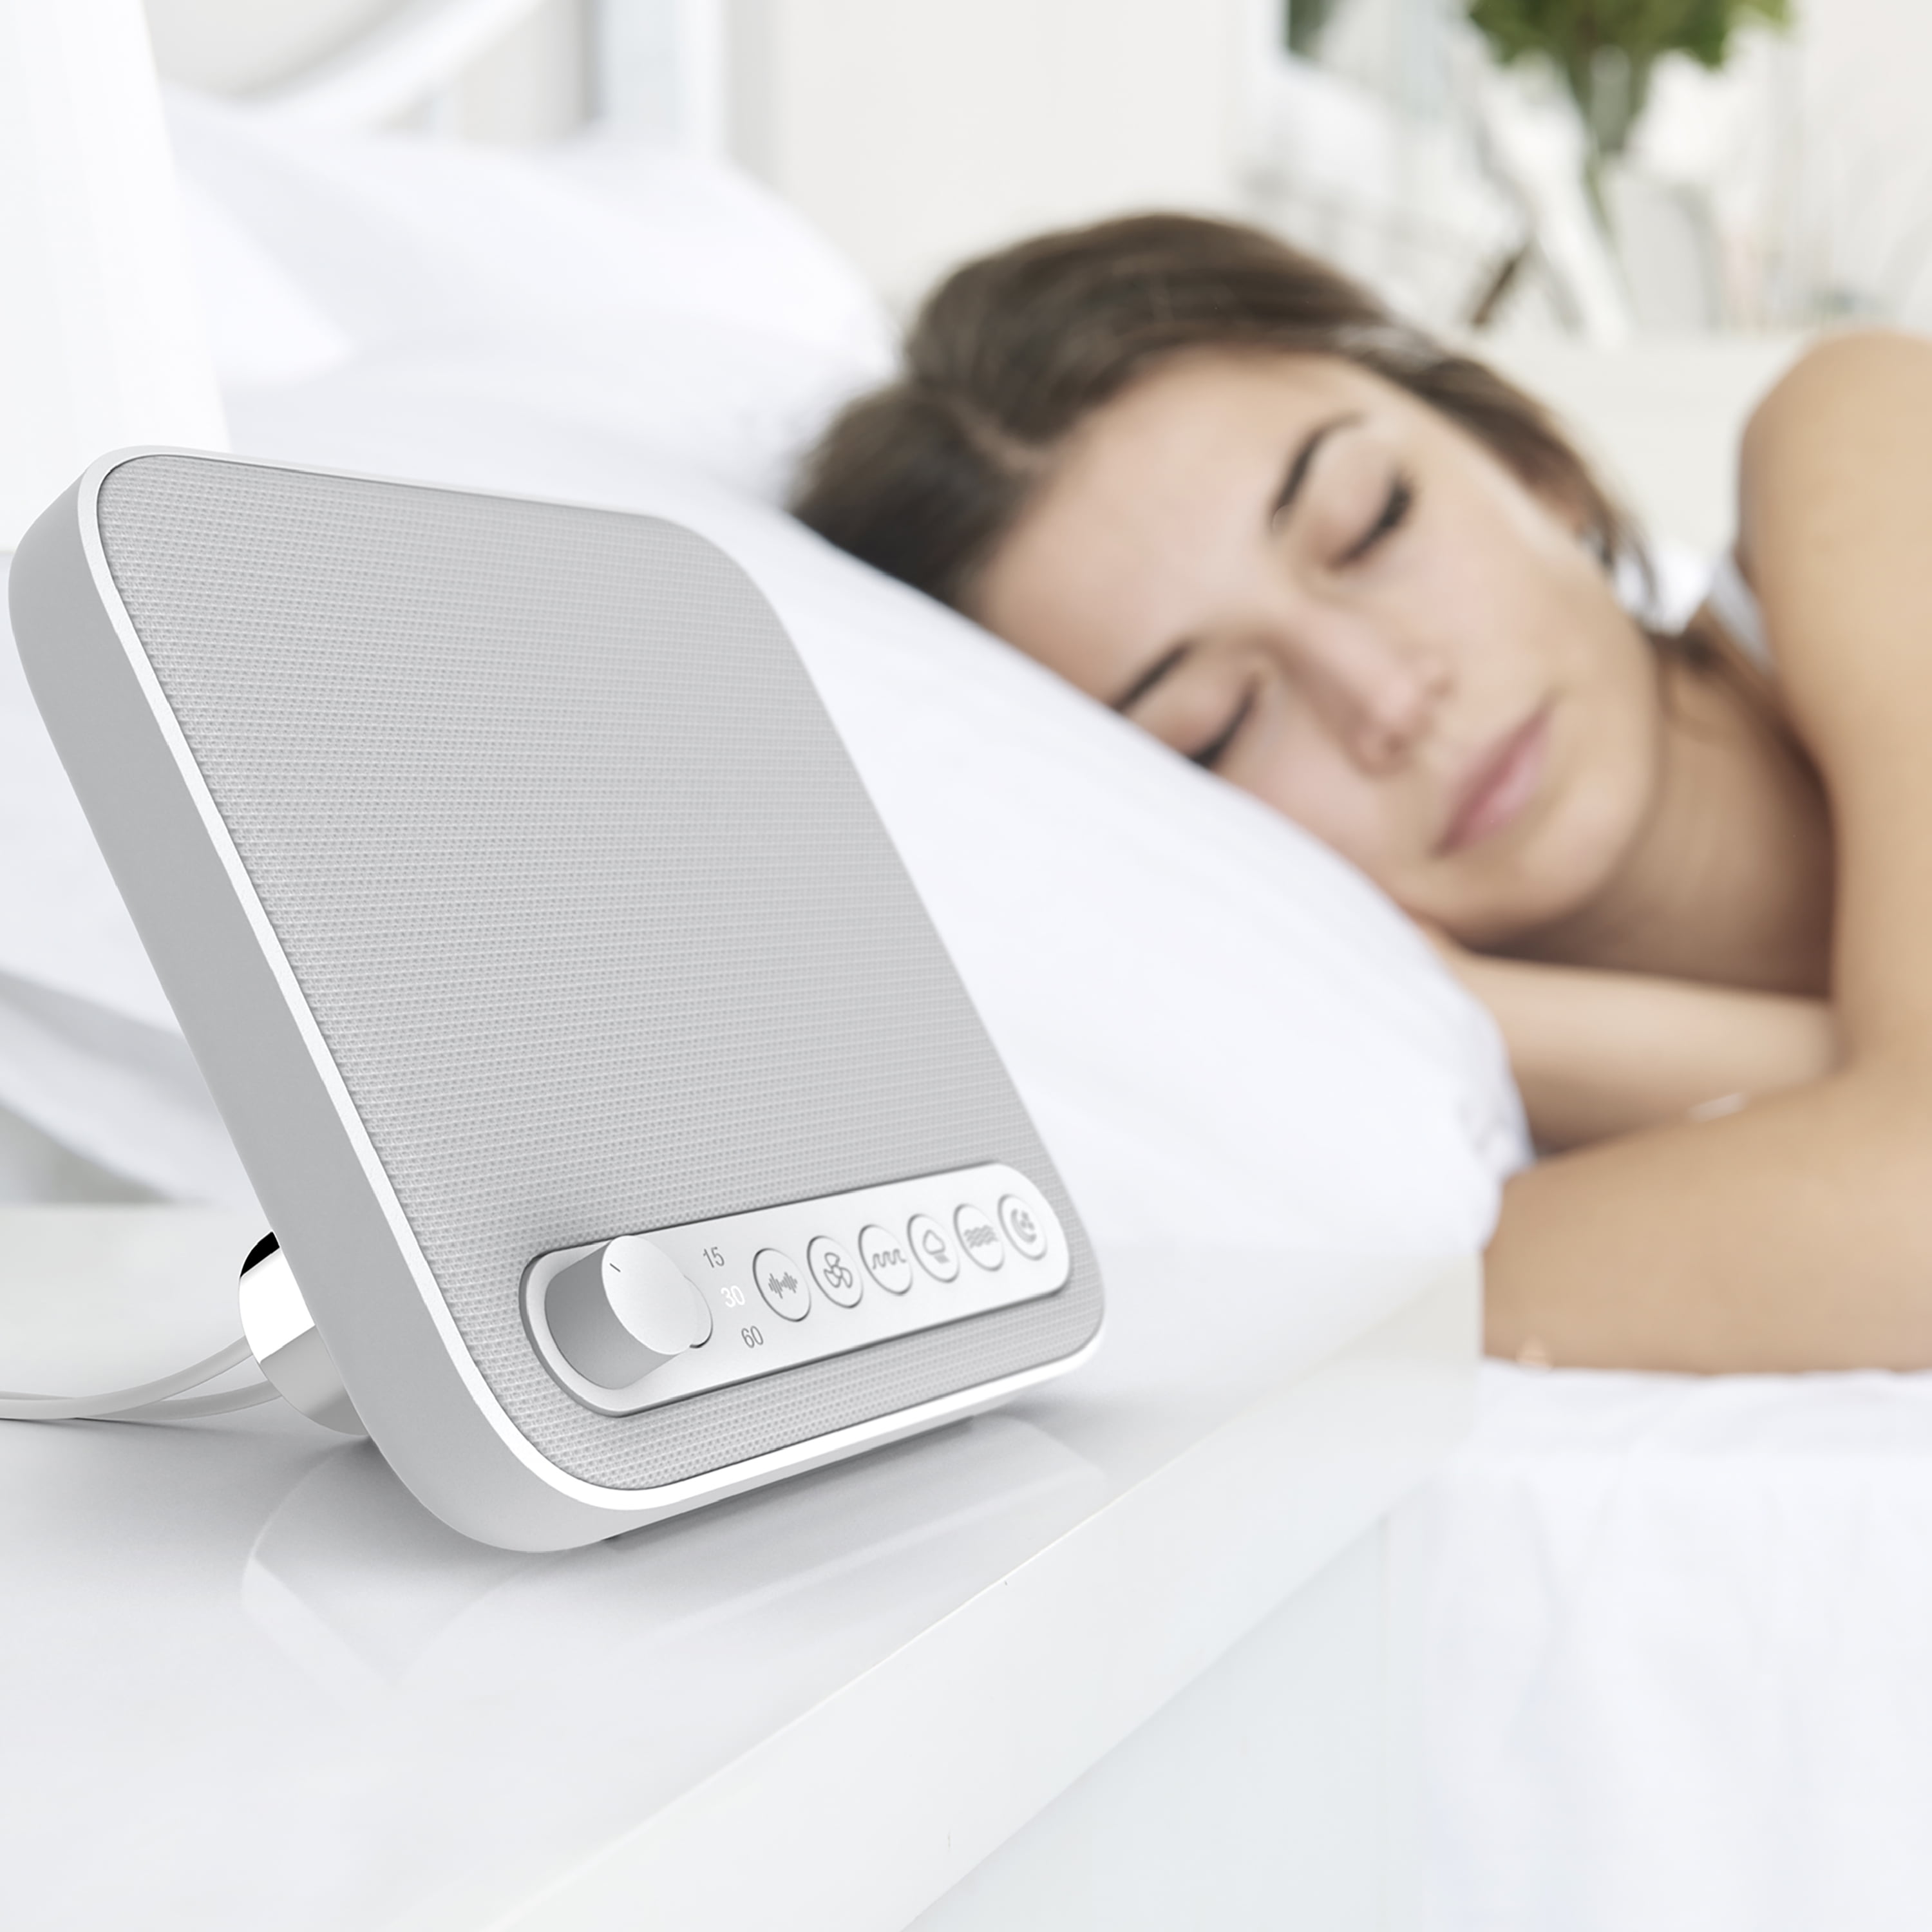 Máy tạo âm thanh cho giấc ngủ sẽ giúp bạn ngủ ngon hơn và giảm thiểu căng thẳng trong ngày hôm sau. Với âm thanh nhẹ nhàng và yên bình, bạn sẽ chìm vào giấc ngủ ngọt ngào cùng với máy tạo âm thanh. 